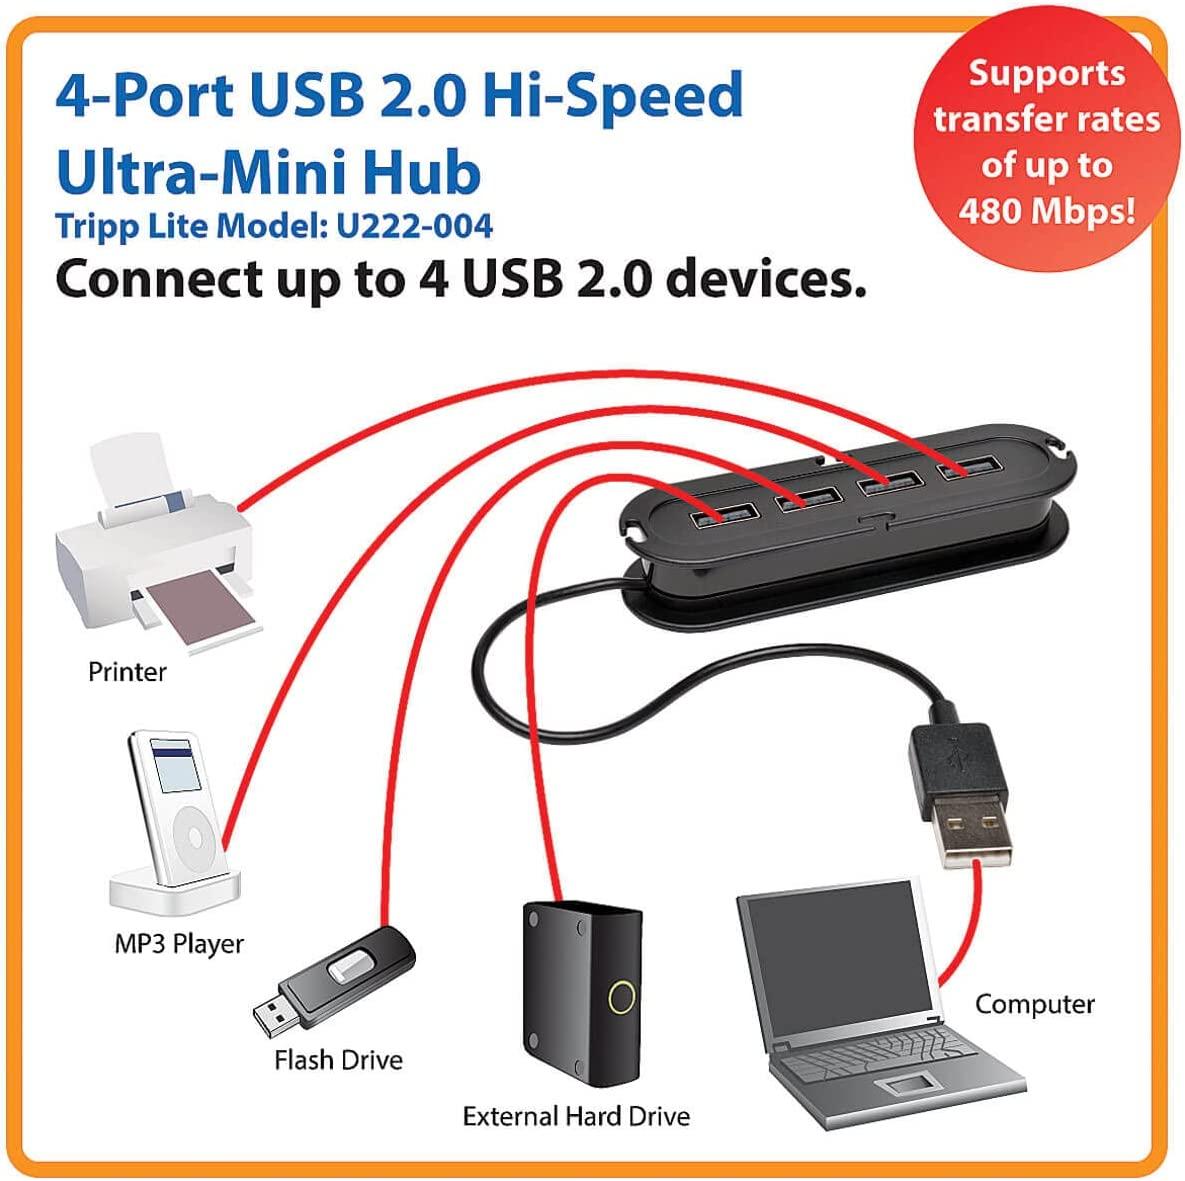 Tripp Lite 4-Port USB 2.0 Hi-Speed Ultra-Mini Hub (U222-004)